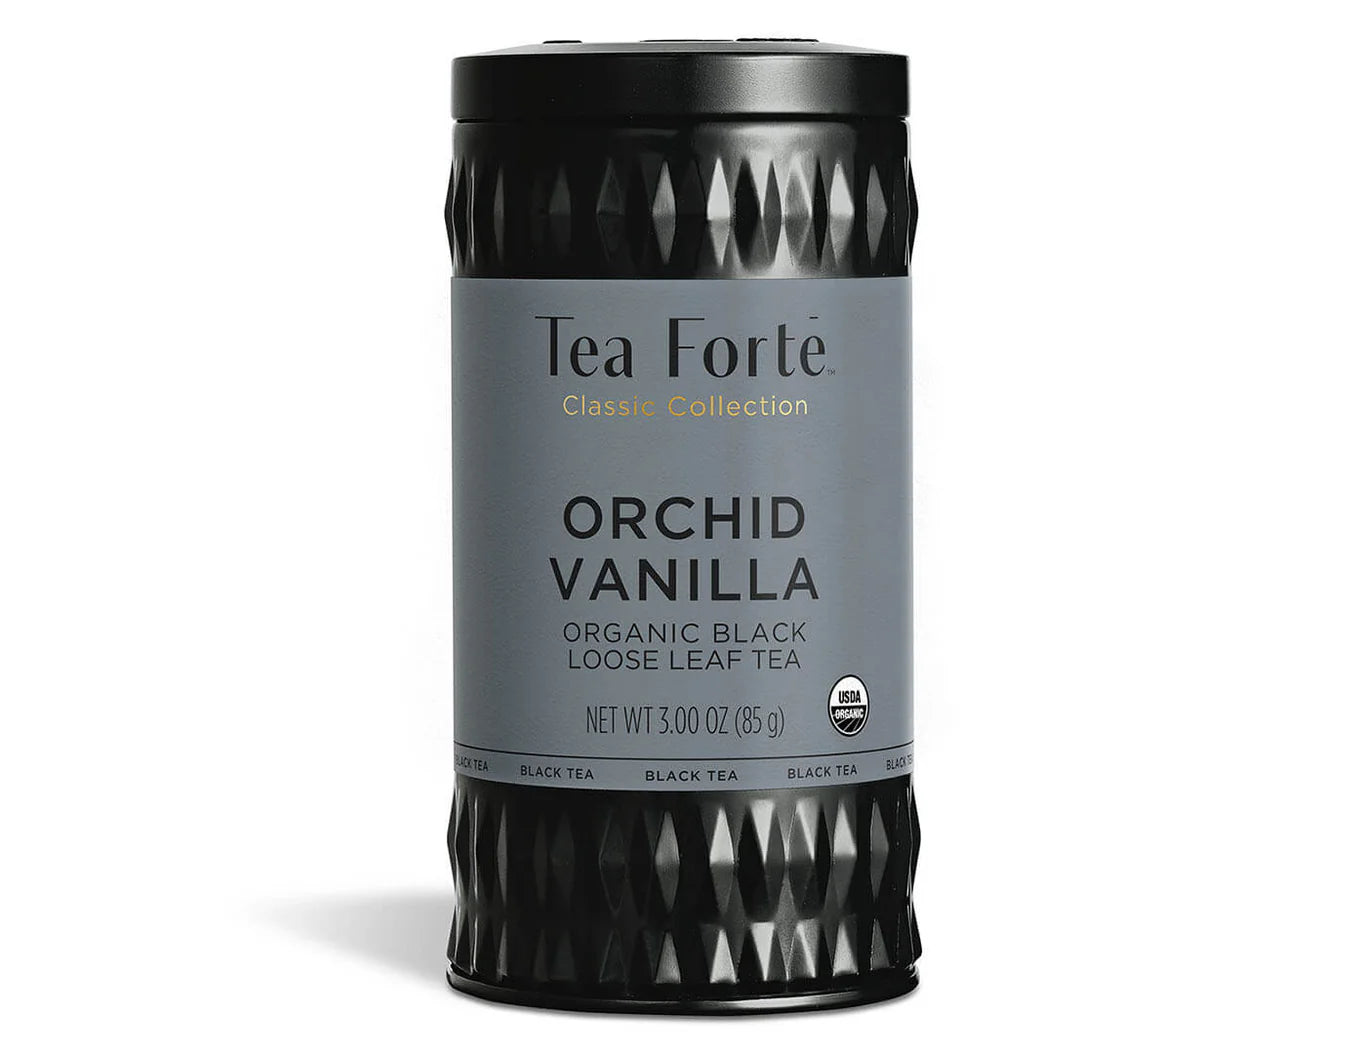 TEA FORTE ORCHID VANILLA